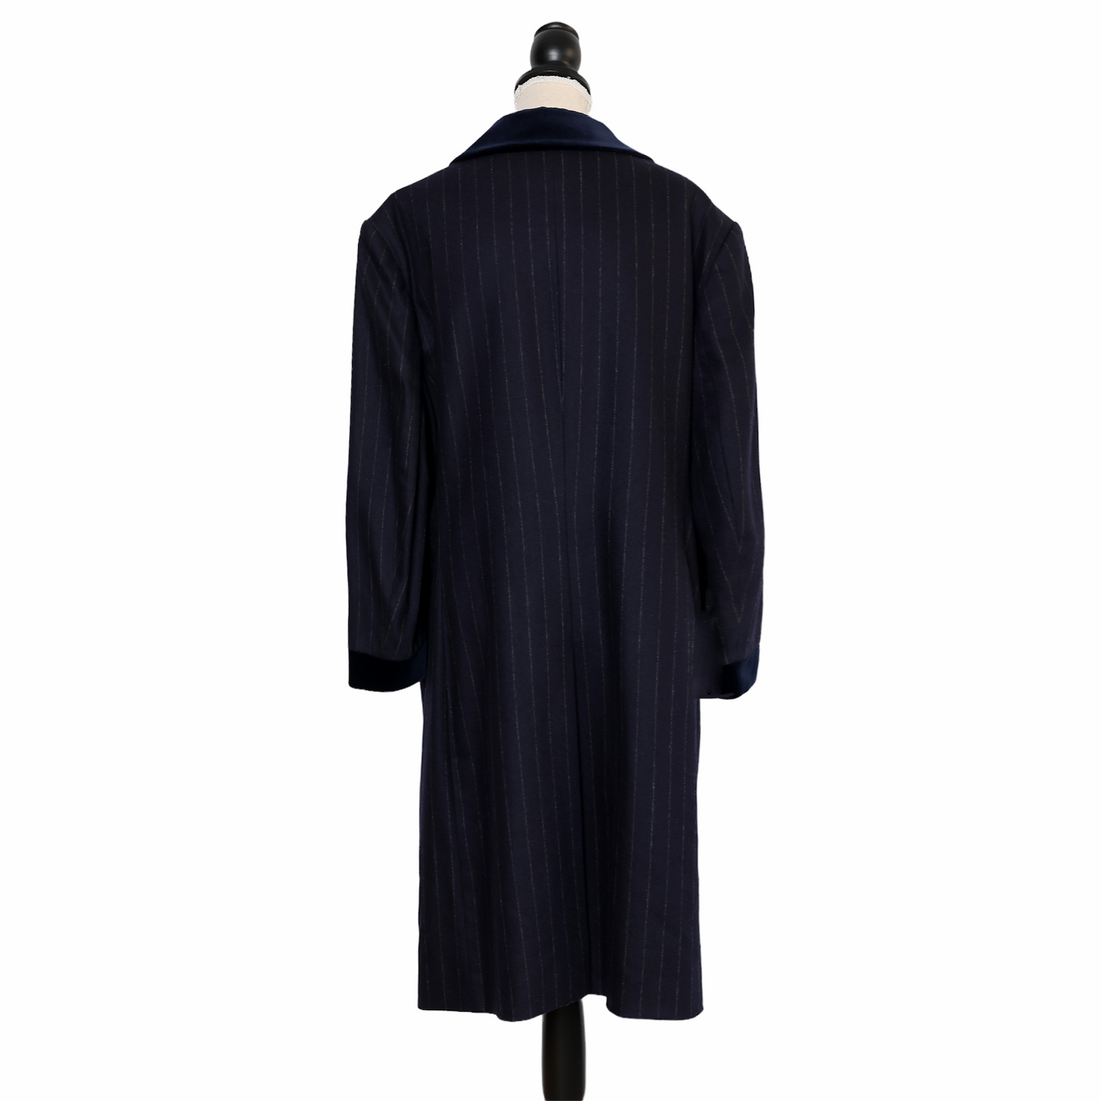 Steinengel pinstripe coat with velvet collar